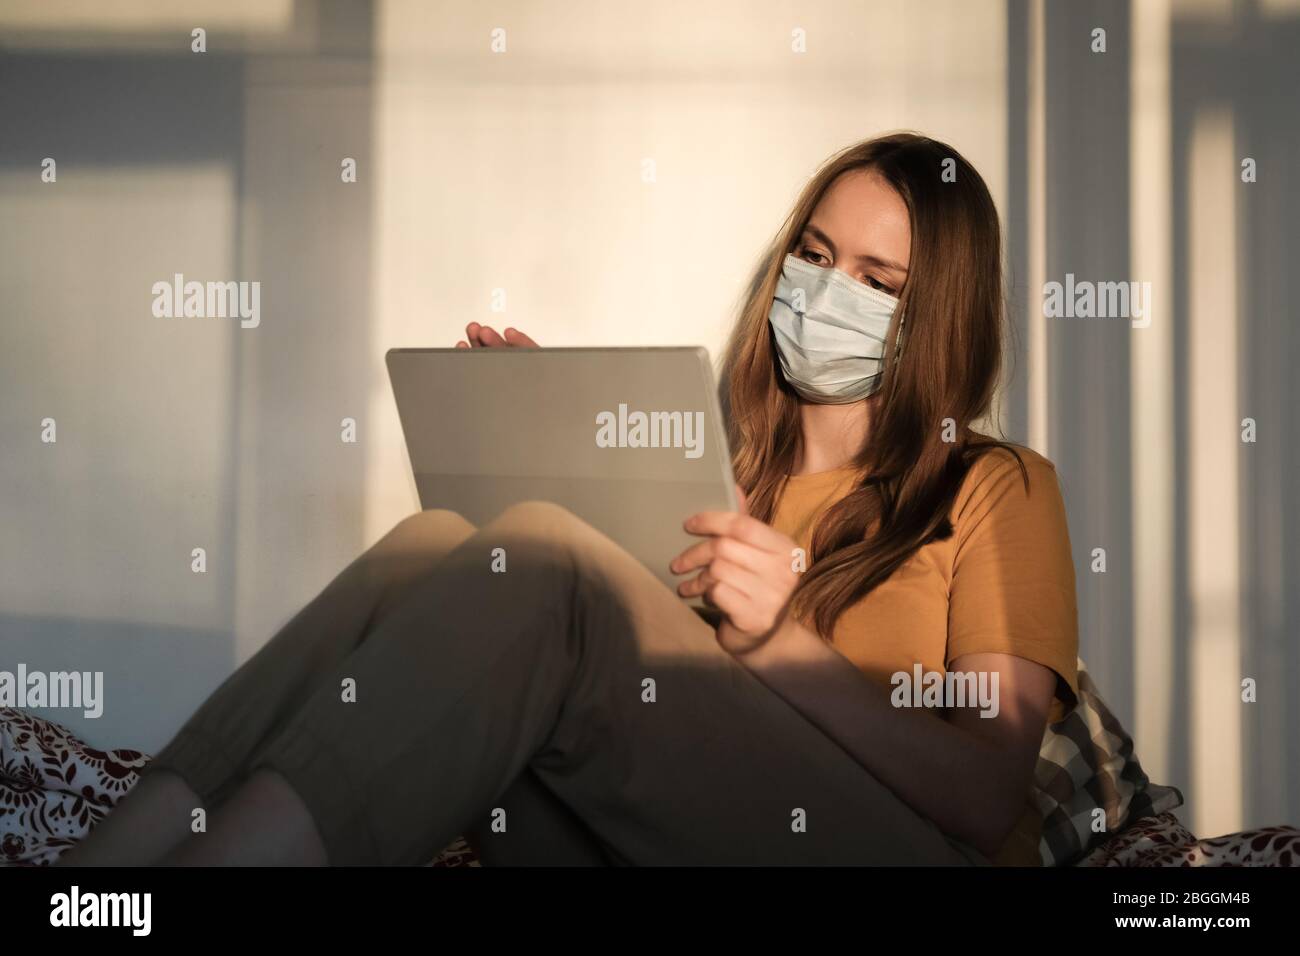 Giovane ragazza in maschera medica protettiva e T-shirt gialla sta studiando o lavorando sul letto sulla compressa. Covid-19 quarantena coronavirus pandemico. Istruzione Foto Stock